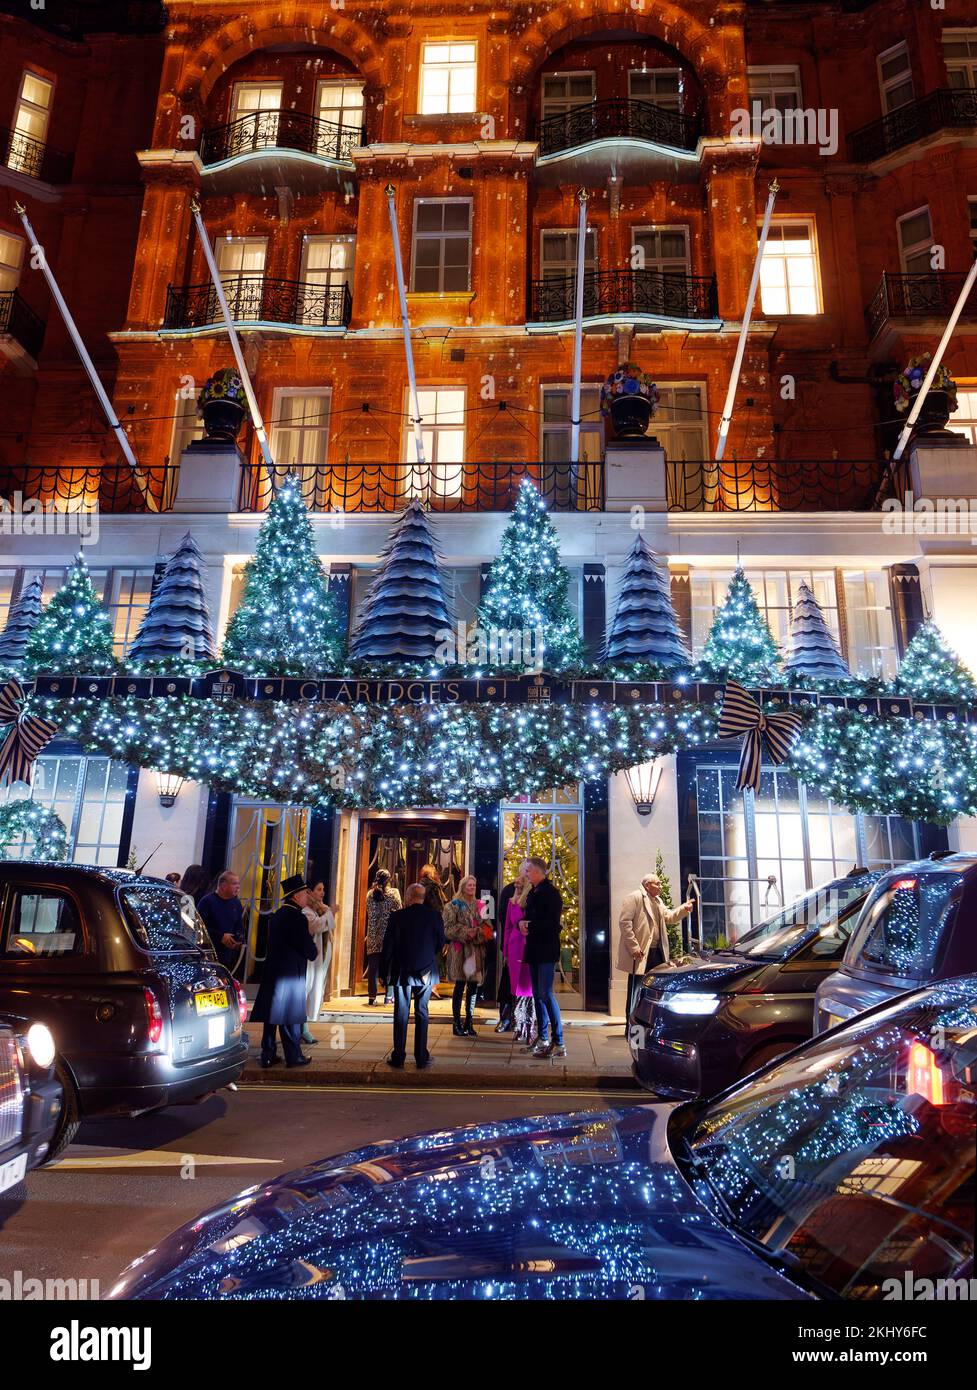 L'iconica facciata dell'hotel di Claridge, con esposizione natalizia. Gli ospiti aspettano un taxi con il portiere fuori dall'ingresso. Foto Stock